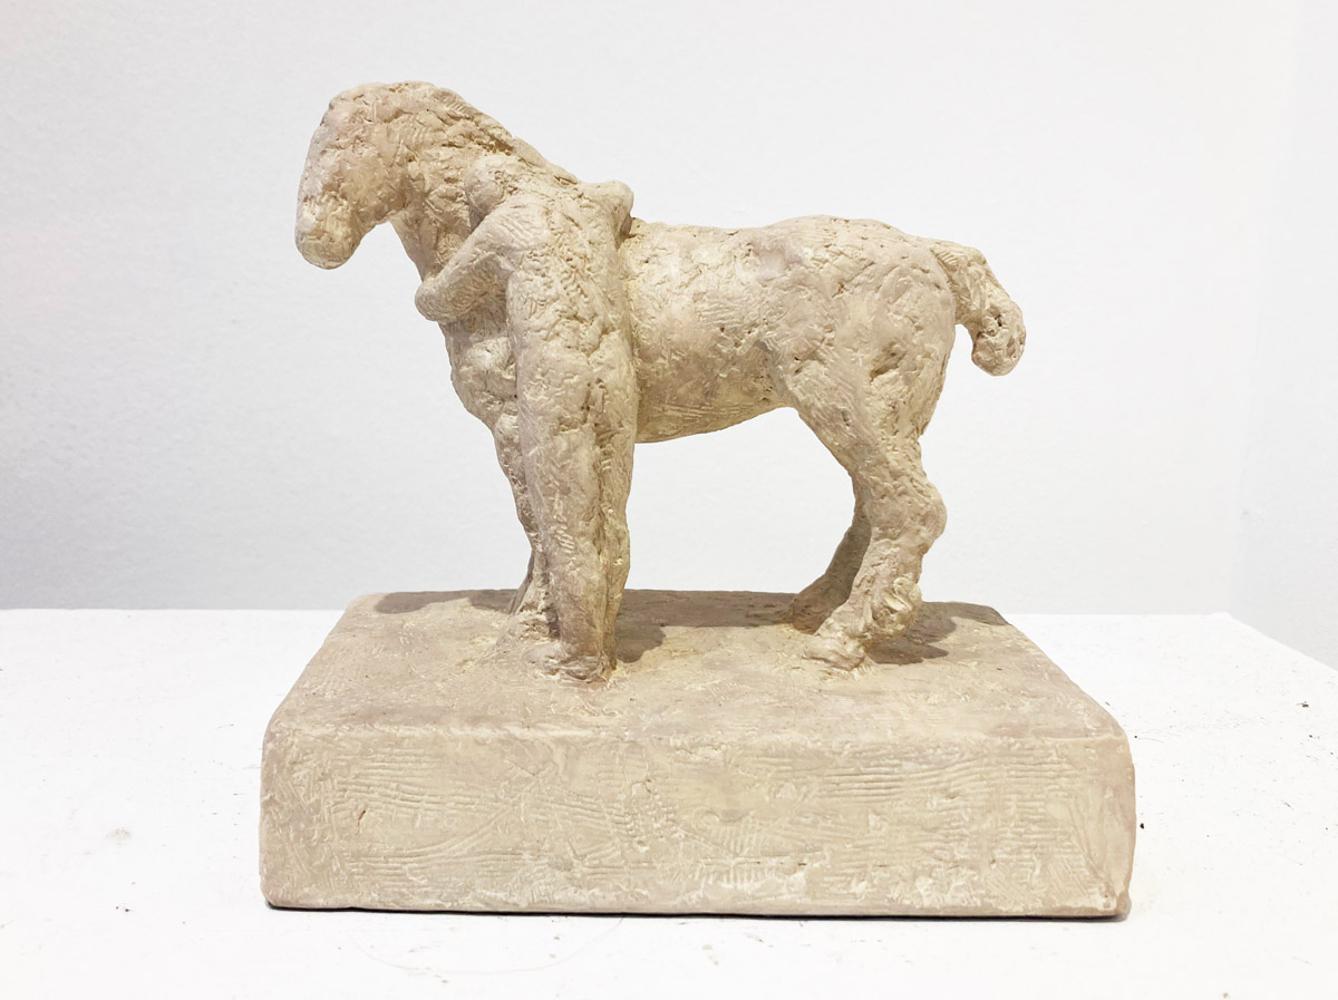 Manny Woodard Nude Sculpture – Zwei - Pferd und Mensch: Erdpigment- und Jesmonit-Skulptur mit geformter Skulptur